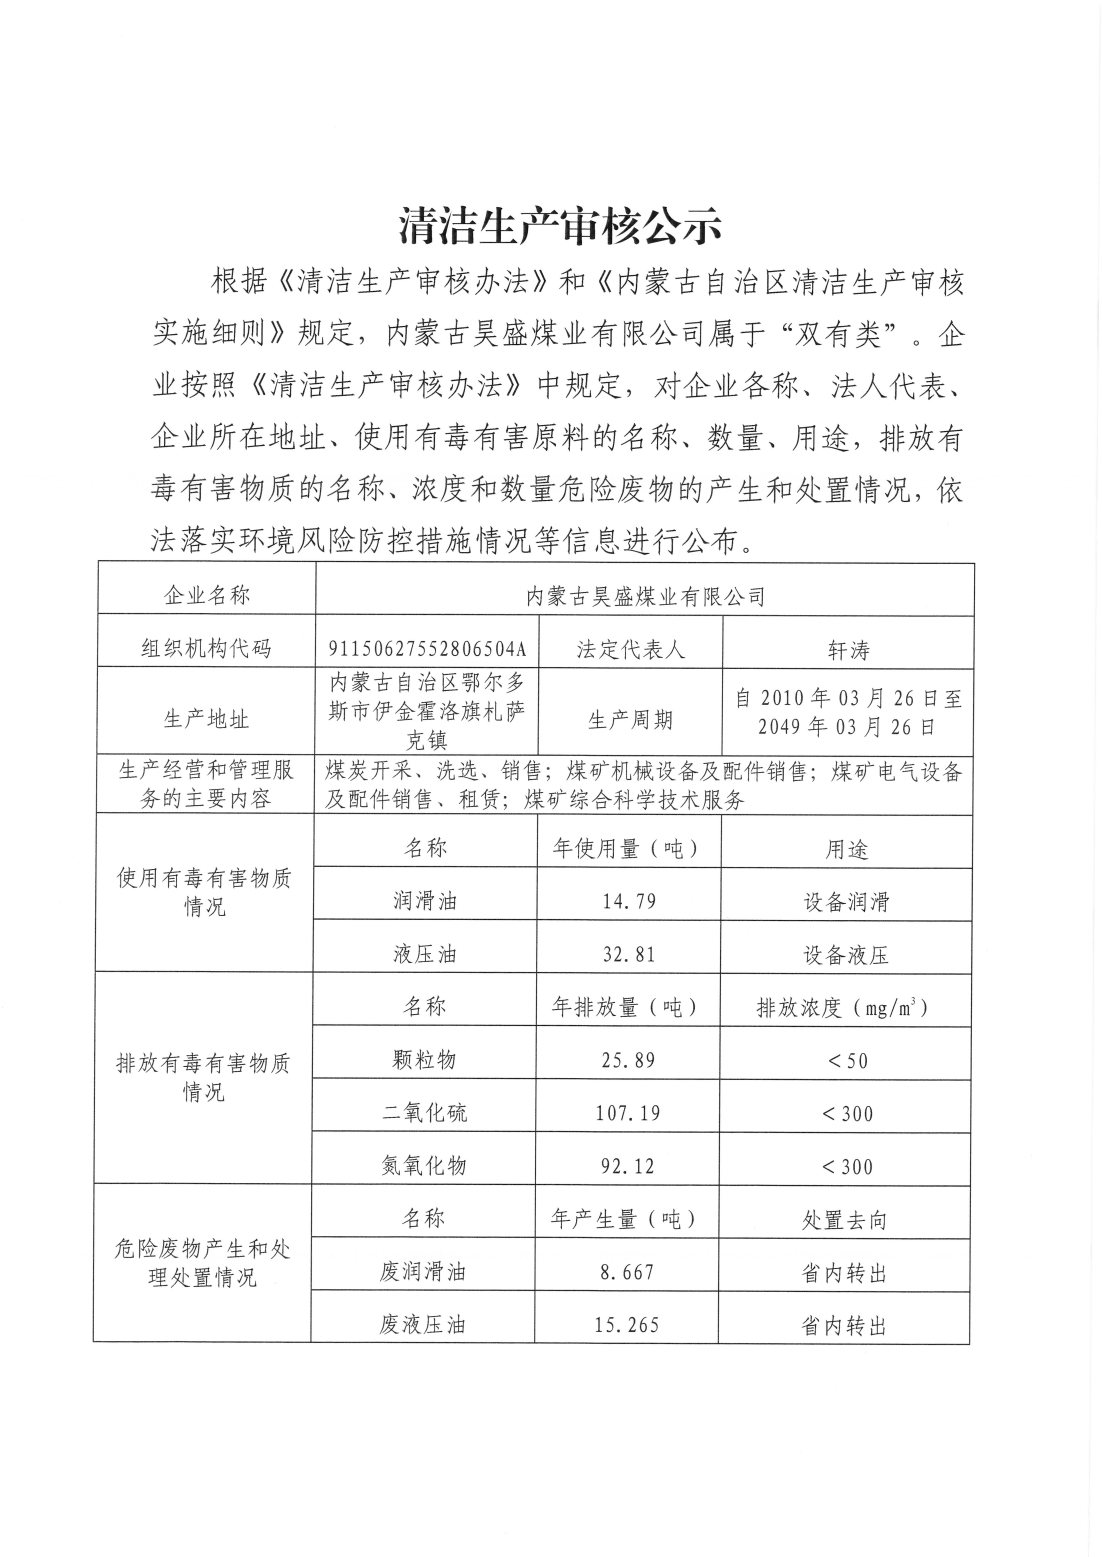 关于内蒙古昊盛煤业有限公司强制性清洁生产公示的申请_01